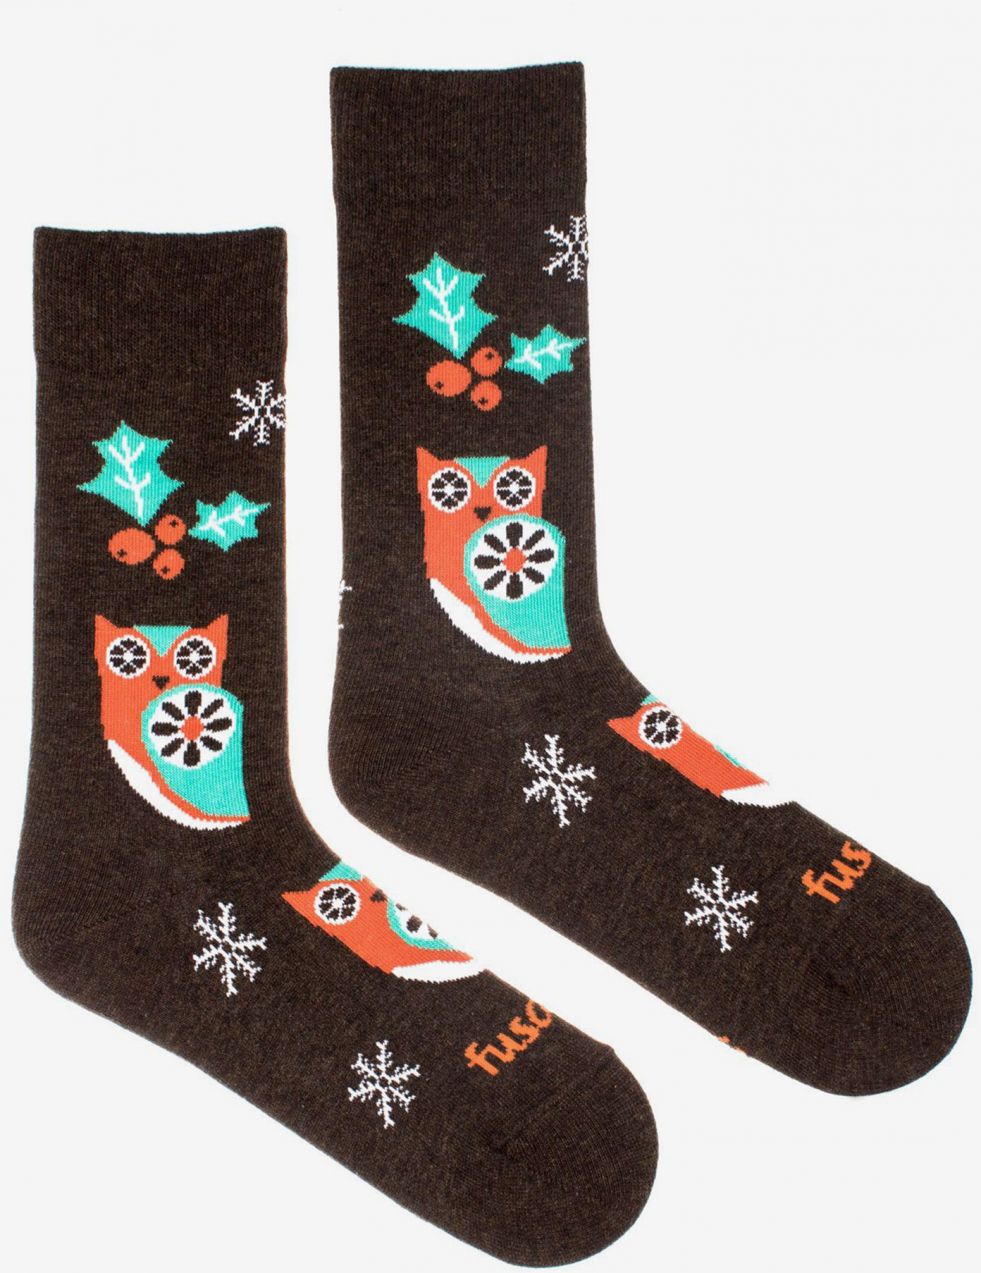 Hnedé dámske vzorované ponožky Fusakle night socks